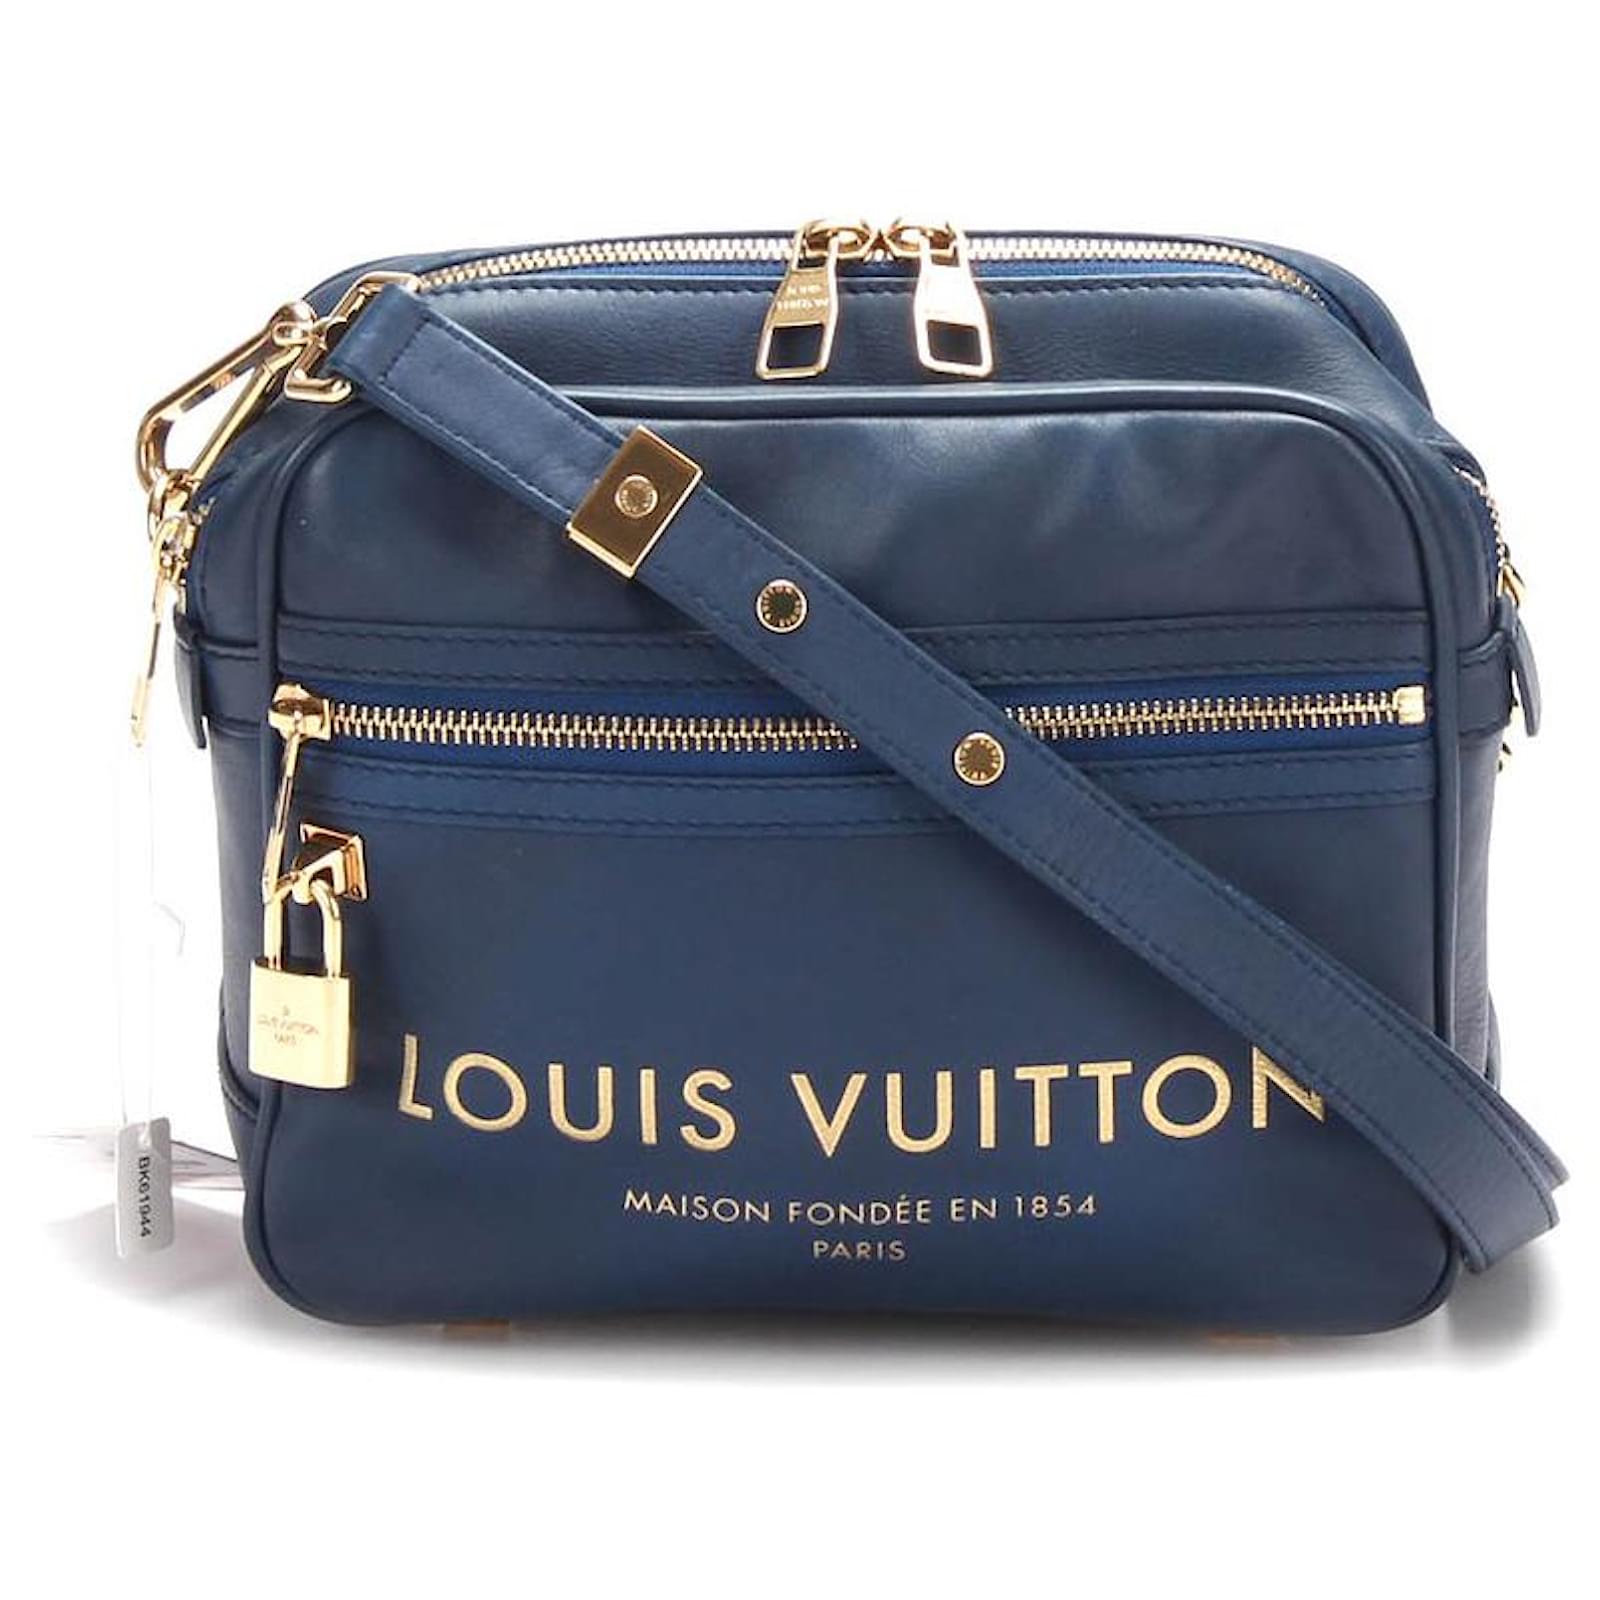 Louis Vuitton Spring/Summer Collection (2009)